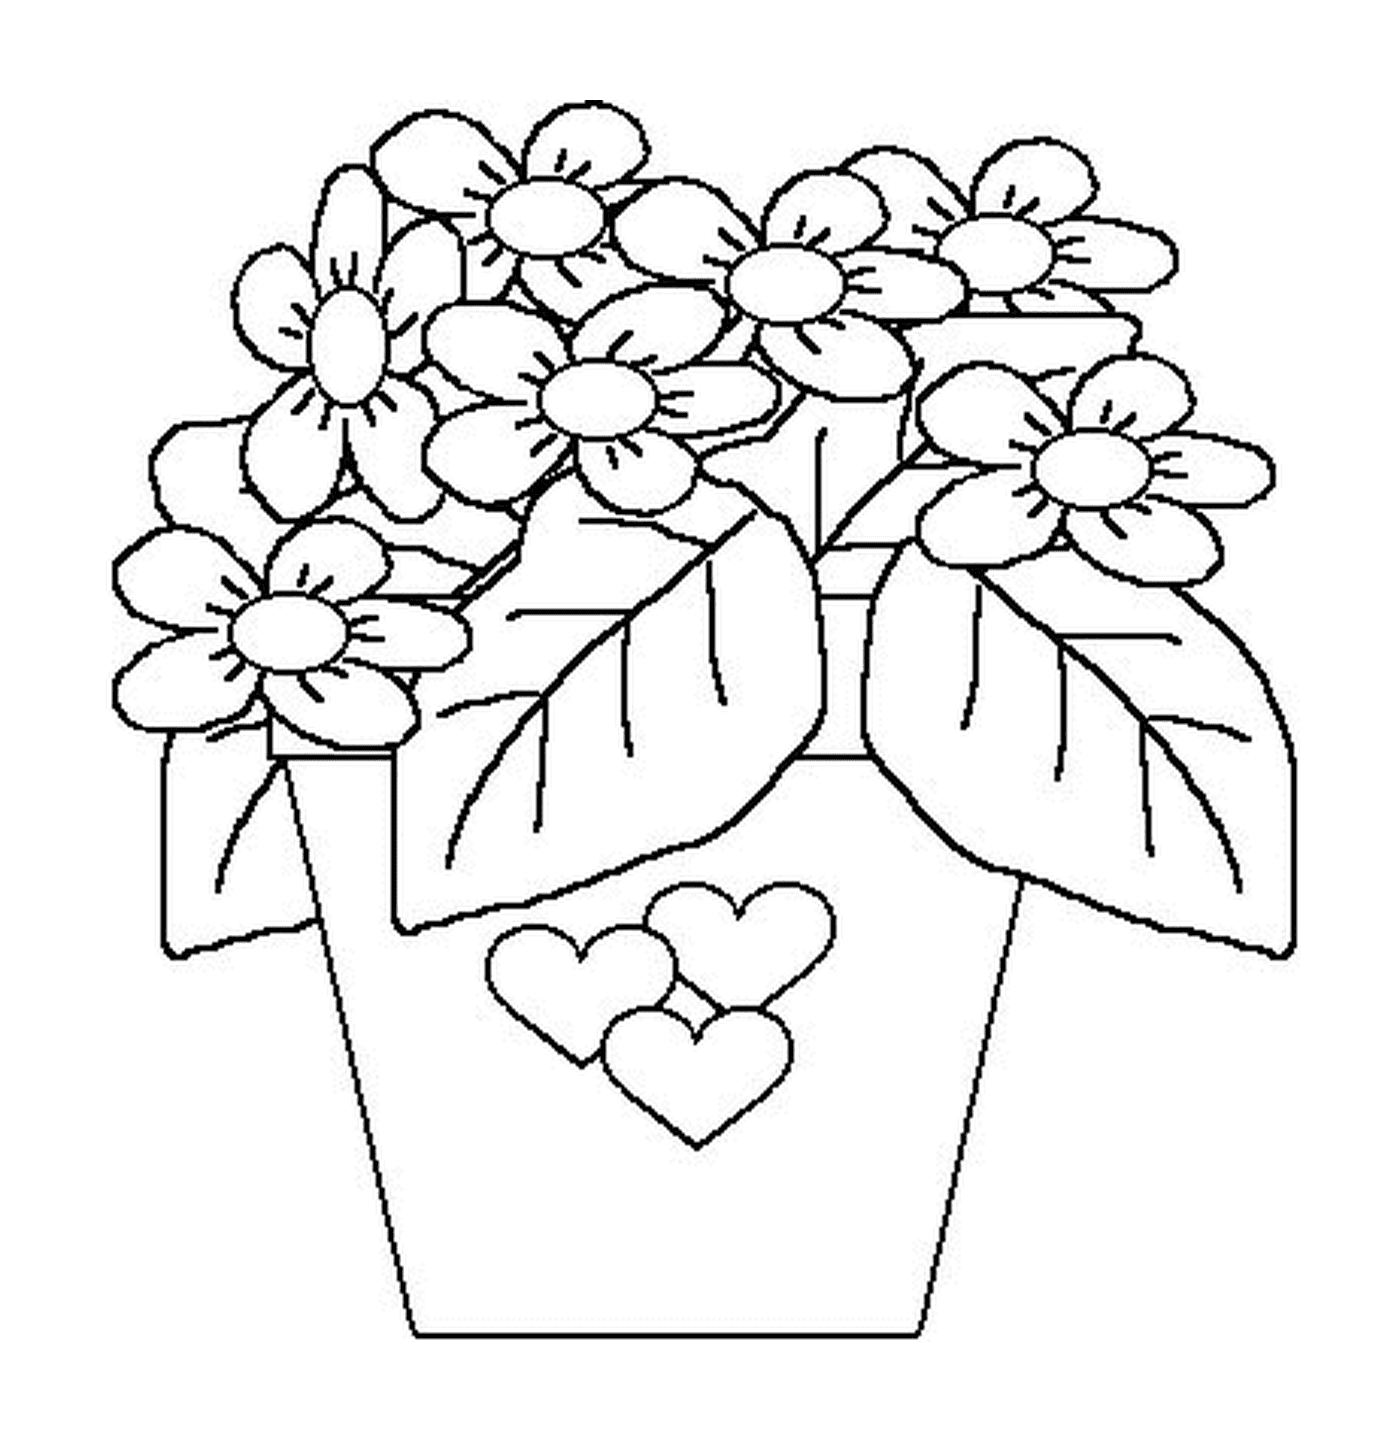  Topf mit Blumen und Herzen 